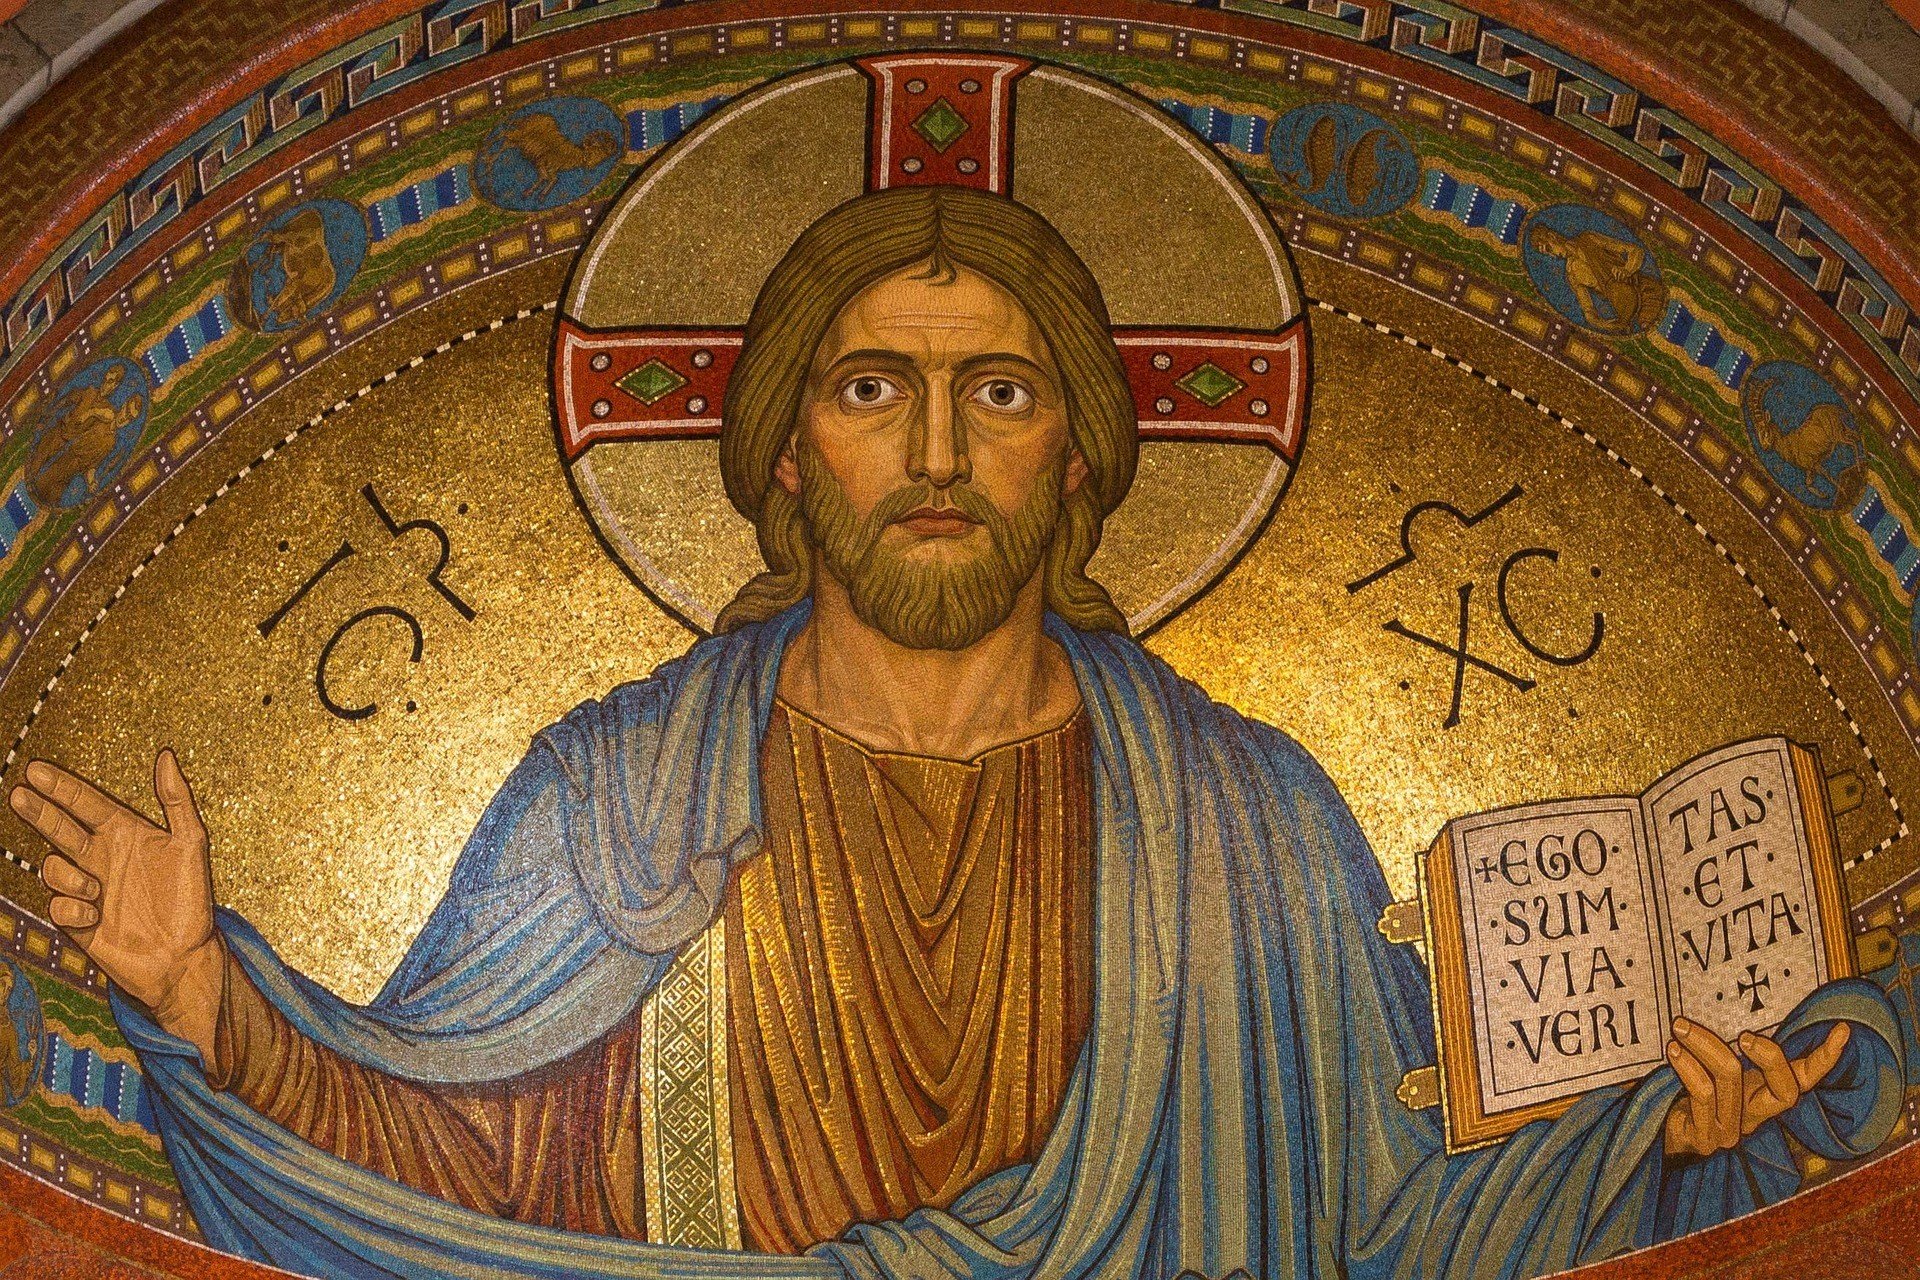 Jesus Cristo ao centro, com os braços abertos e a Bíblia na mão esquerda em tons de dourado, vermelho e azul.